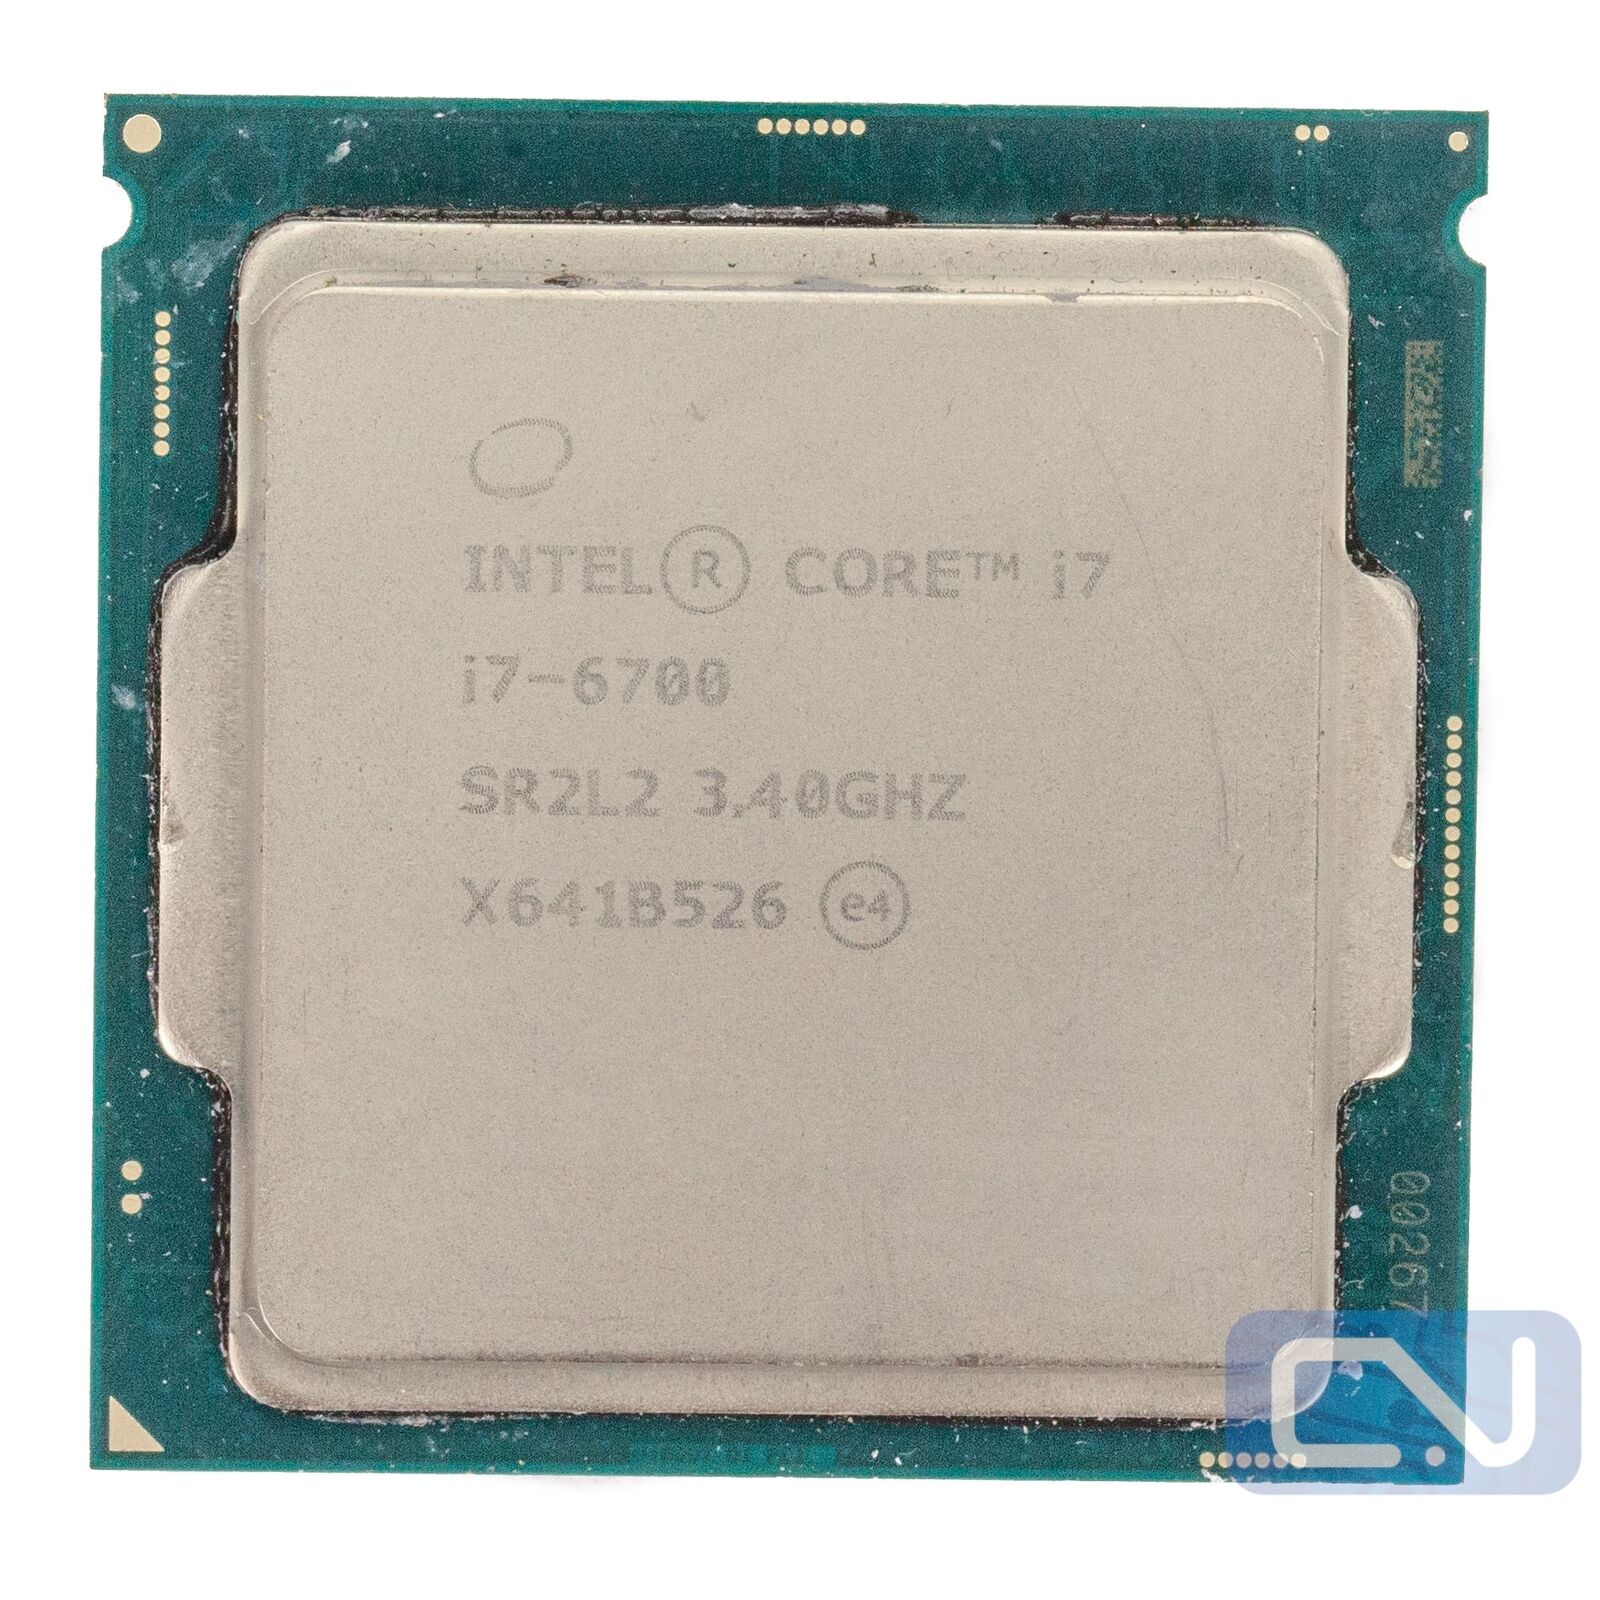 Intel Core i7-6700 3.4GHz 8MB 8GT/s SR2L2 LGA1151 Fair Grade CPU Processor